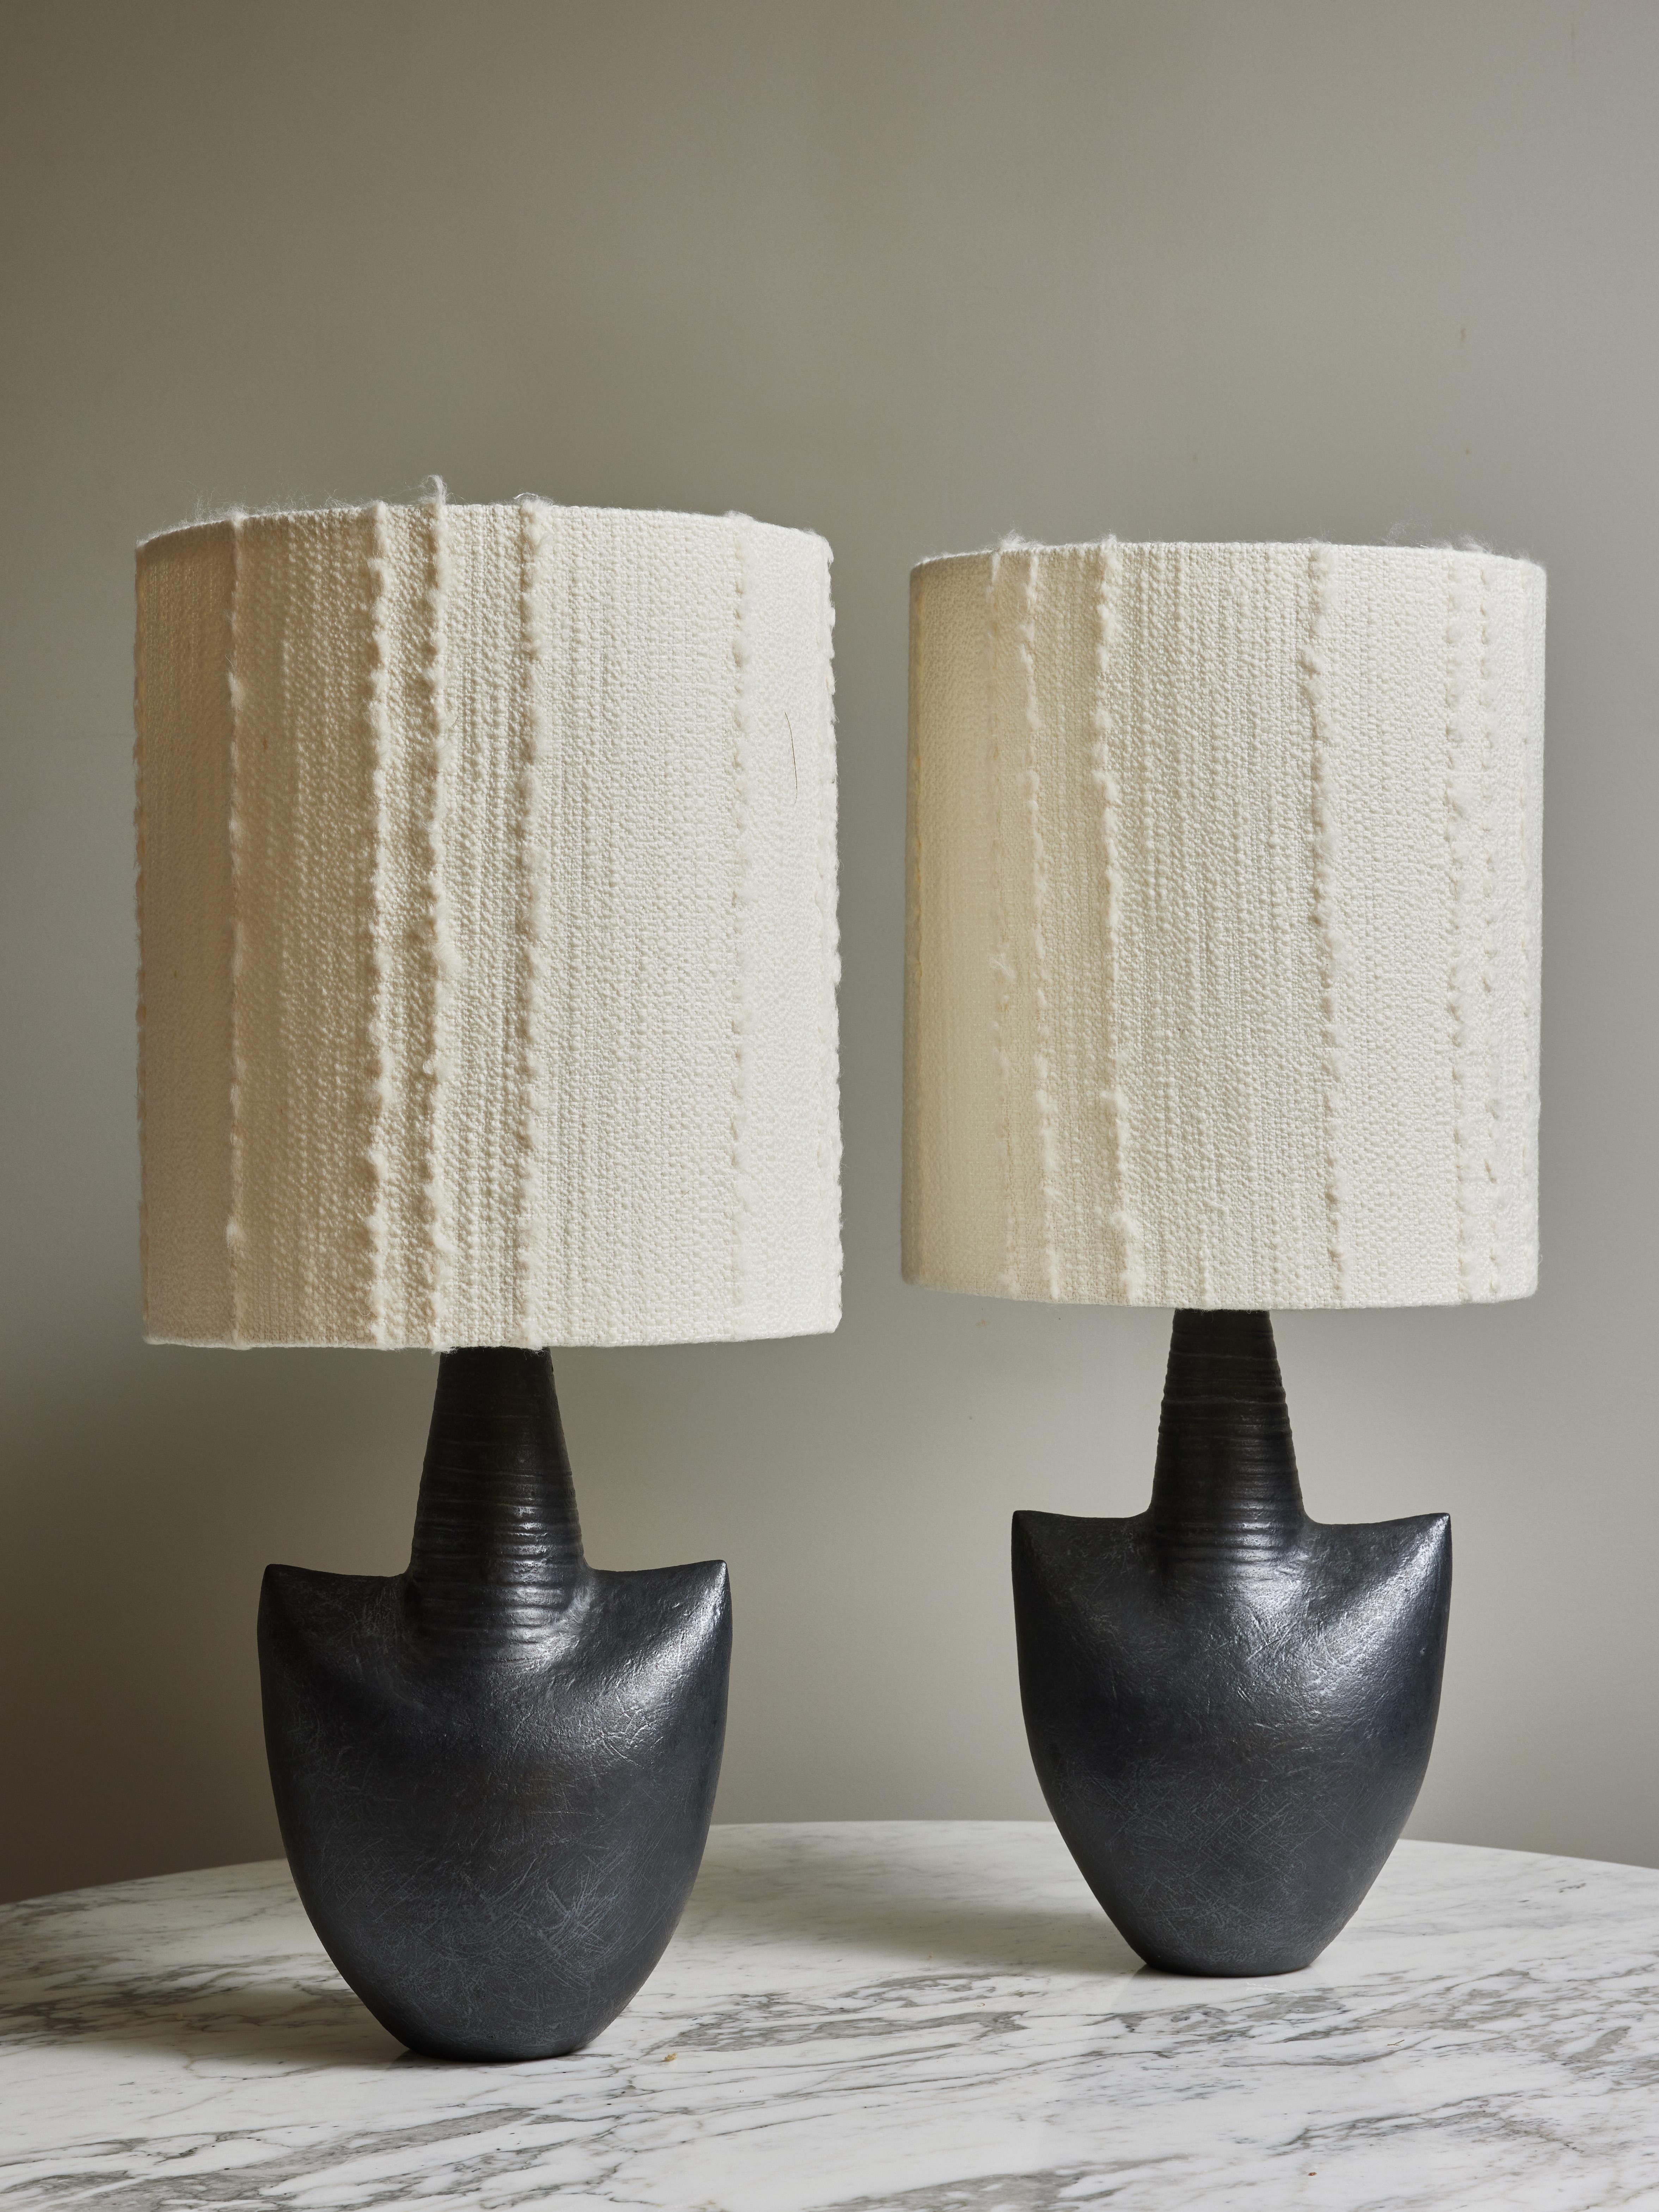 Paire de céramiques modernes d'Andre Bloch transformées en lampes de table. Surmonté d'un abat-jour moderne en tissu Nobilis.